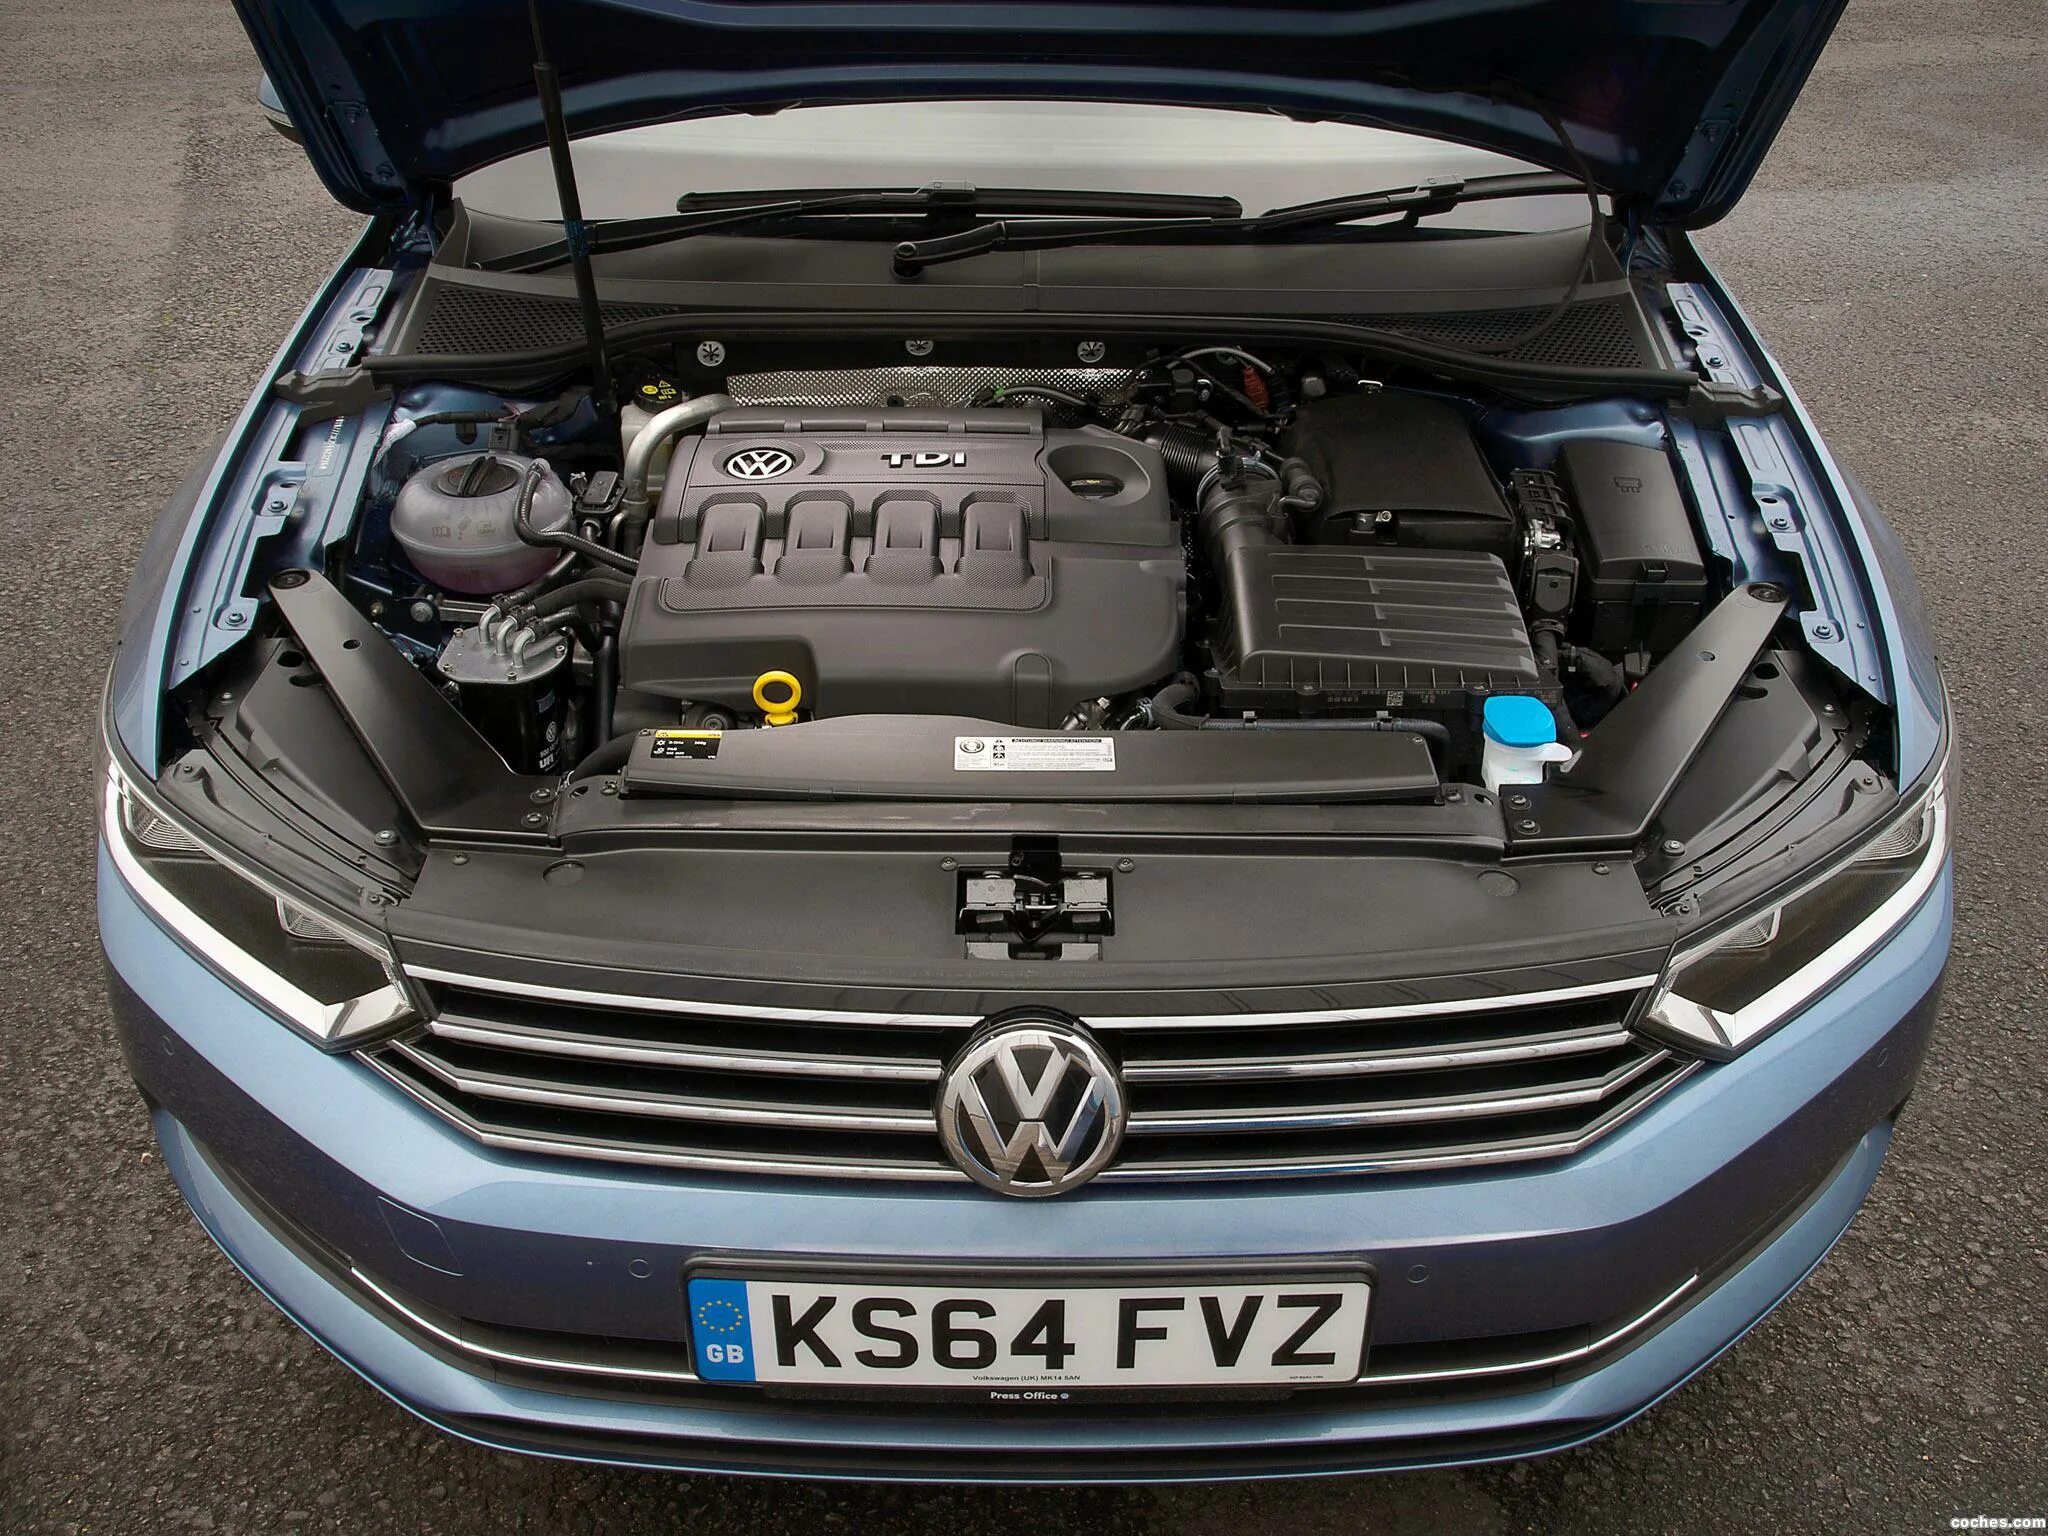 VW Passat b8 двигатель. Пассат б8 моторный отсек. Passat b8 под капотом. Volkswagen Passat b6 2.0 TDI моторы.